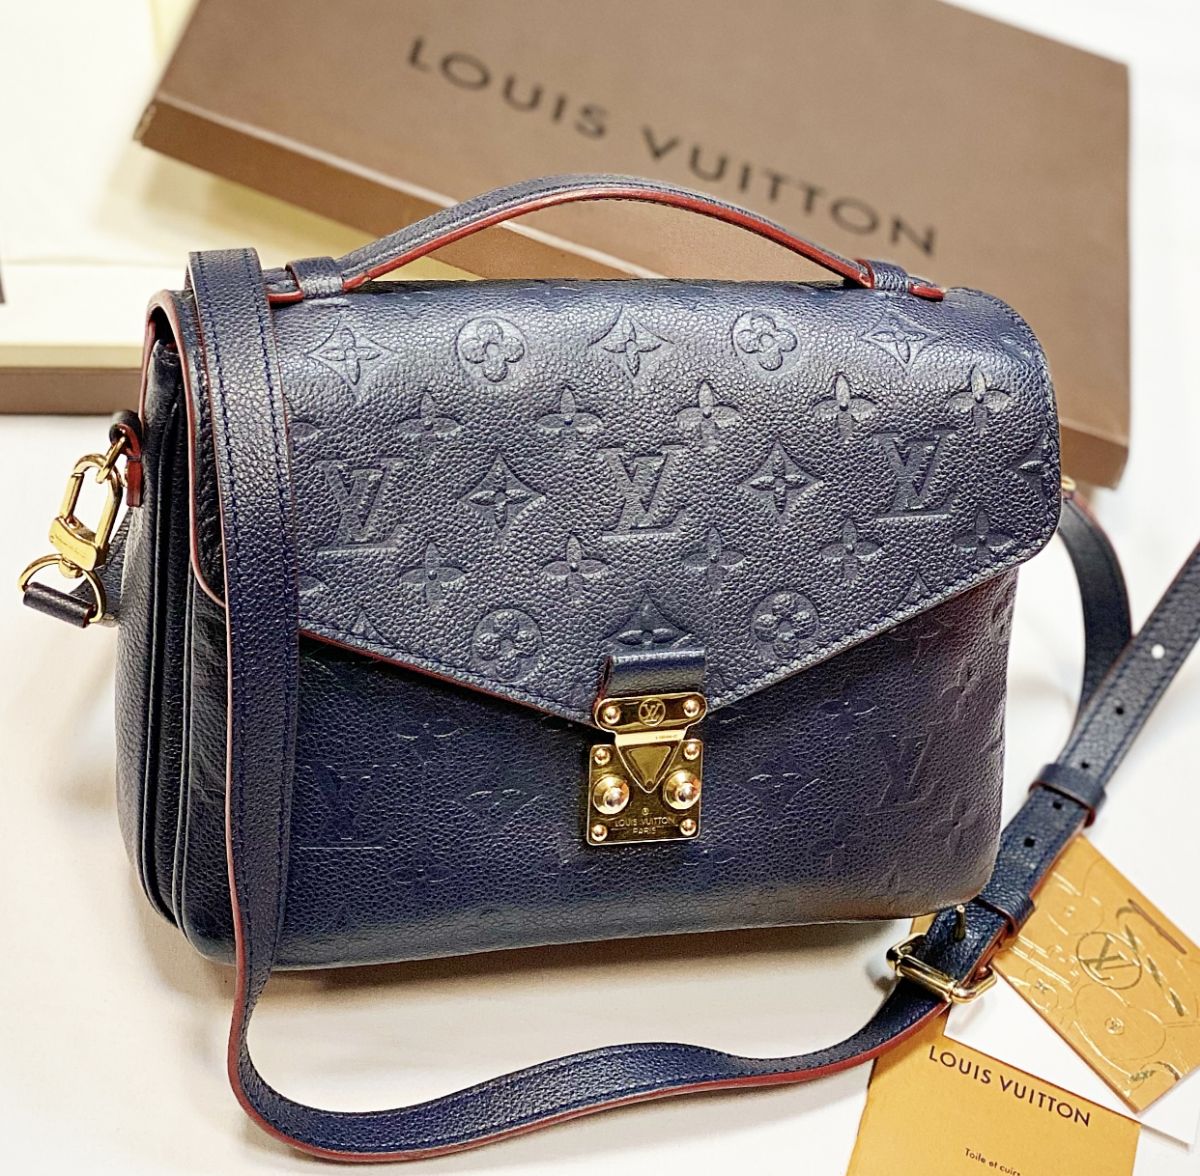 Сумка Louis Vuitton размер 25/15 цена 138 463 руб / документы / 